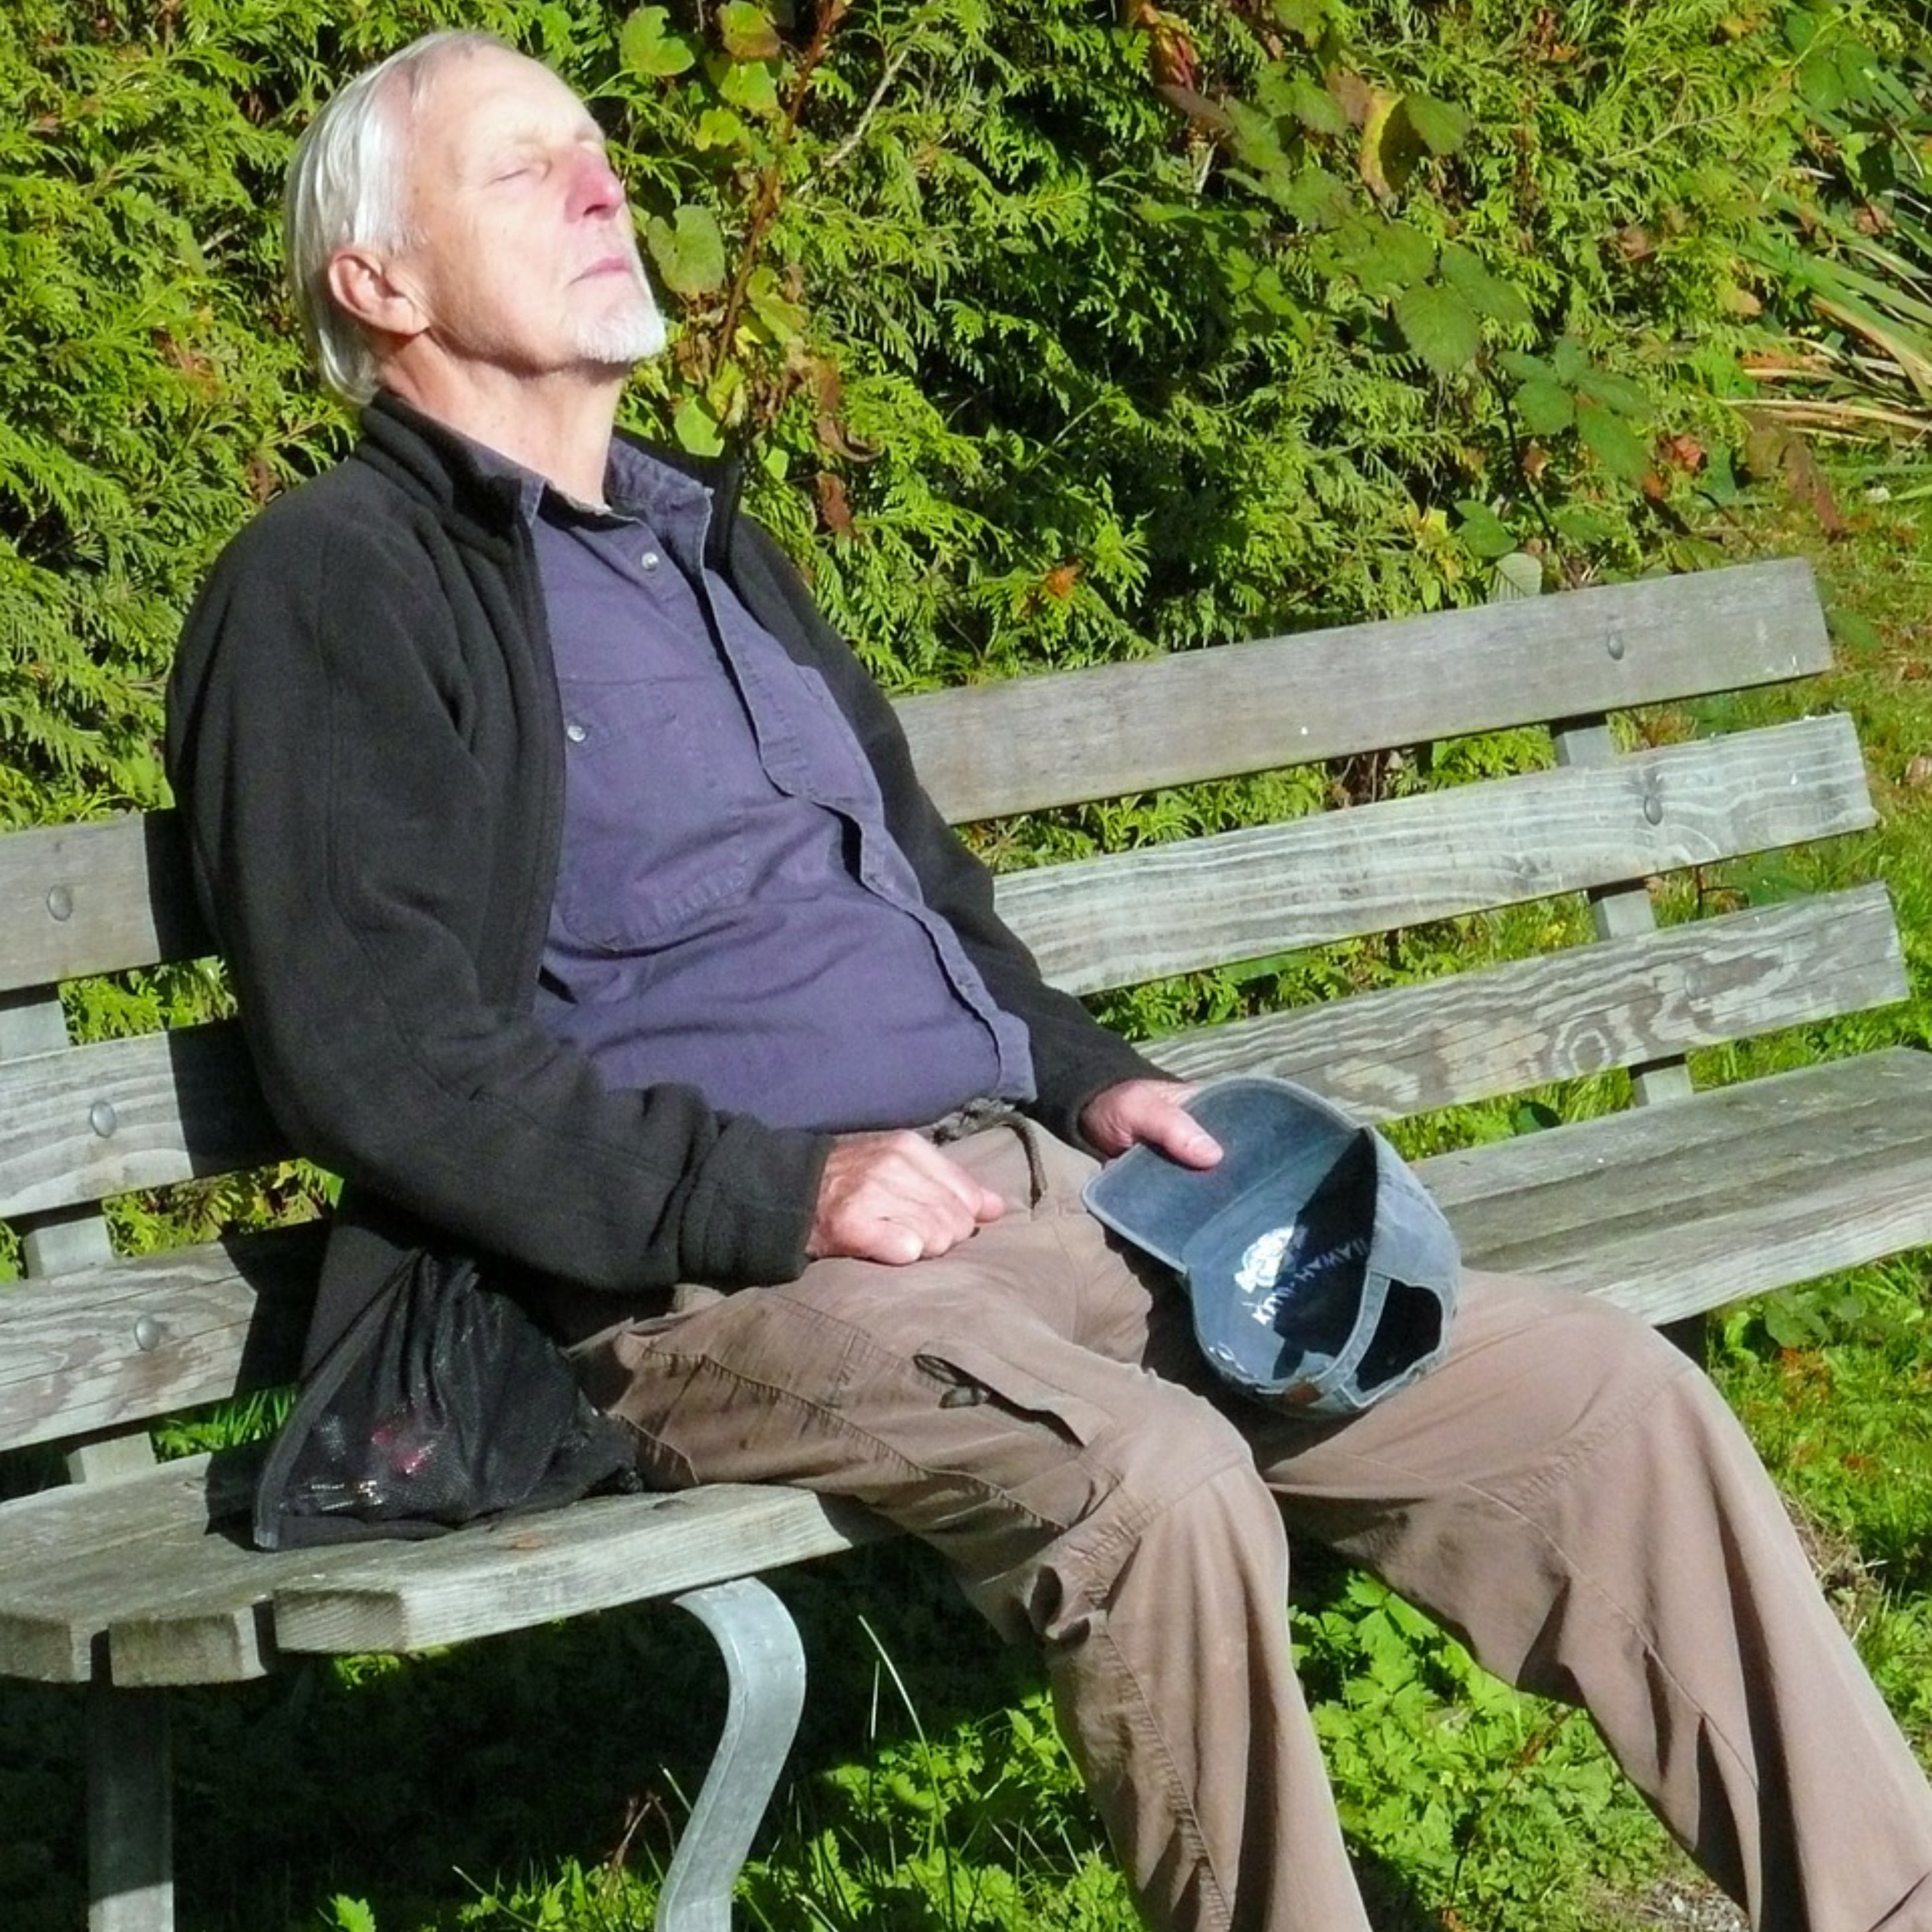 La somnolencia diurna en los mayores puede ser indicativa de otra enfermedad